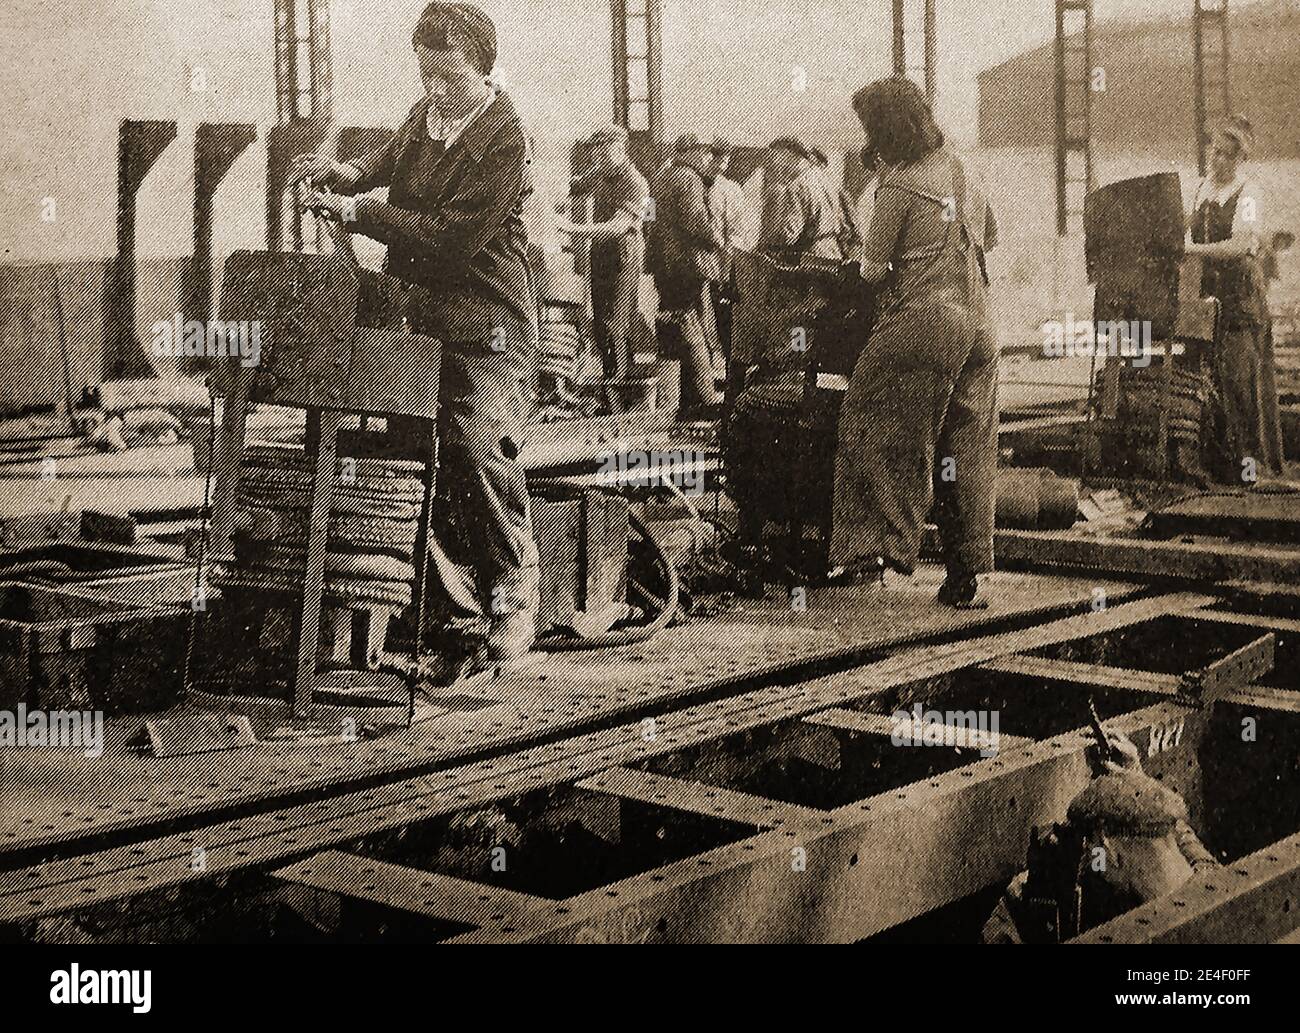 Eine Ansicht, die zeigt, dass viele britische Frauen im Zweiten Weltkrieg Männer Jobs in Werften übernommen haben (aus einem 1940er Magazin Bild). Anfangs wurden diese weiblichen Angestellten nur von ihren männlichen Kollegen geduldet, aber schnell respektiert, so sehr, dass viele nach Beendigung der Feindseligkeiten in ihren Jobs blieben. Stockfoto